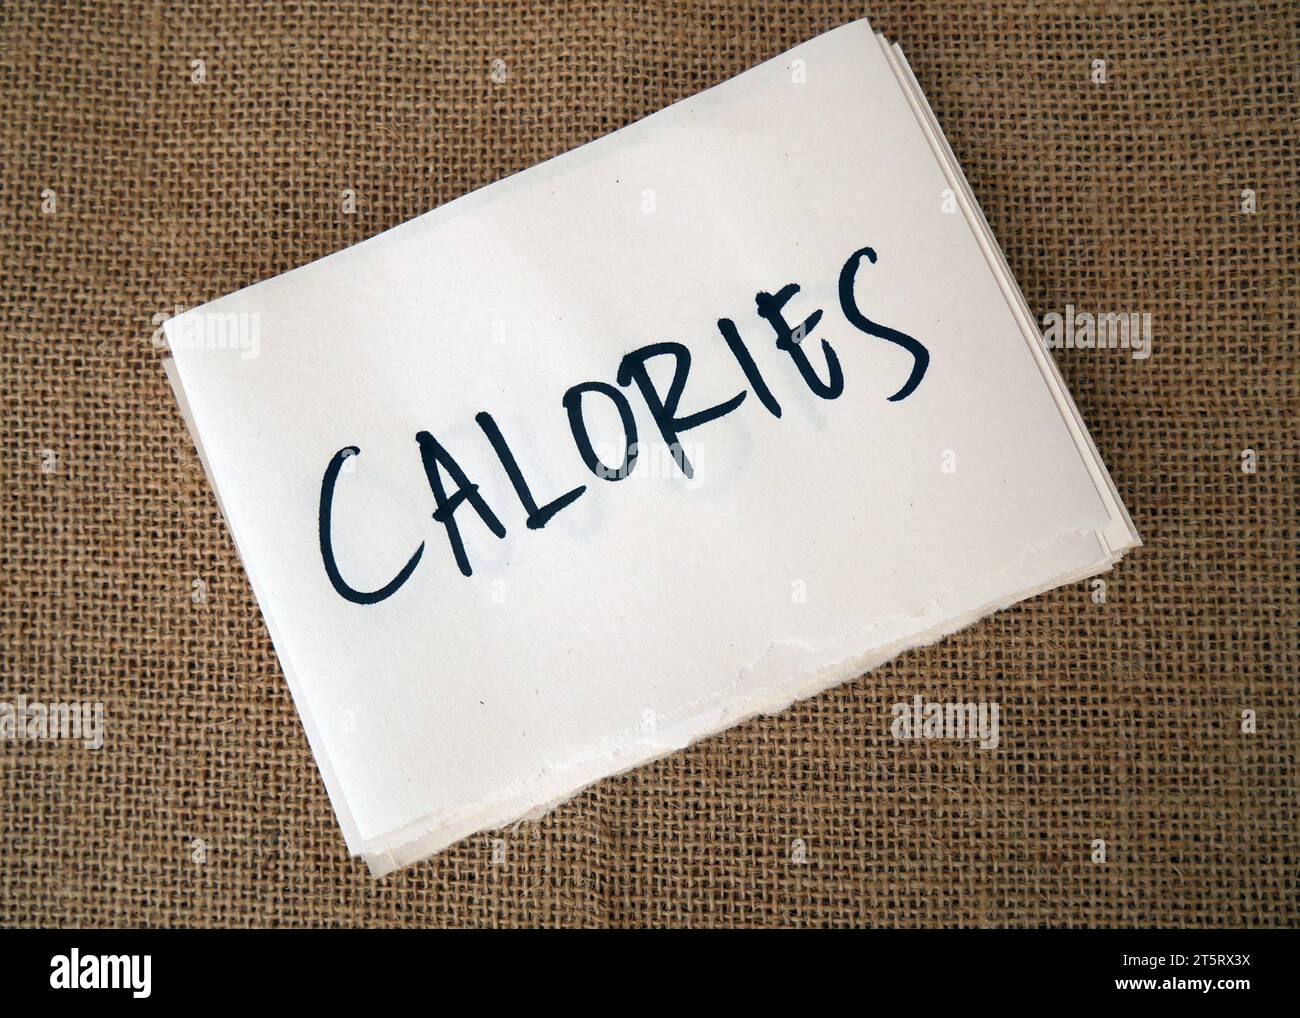 Le calorie sono scritte su carta. Concetto di conteggio calorico. Foto Stock